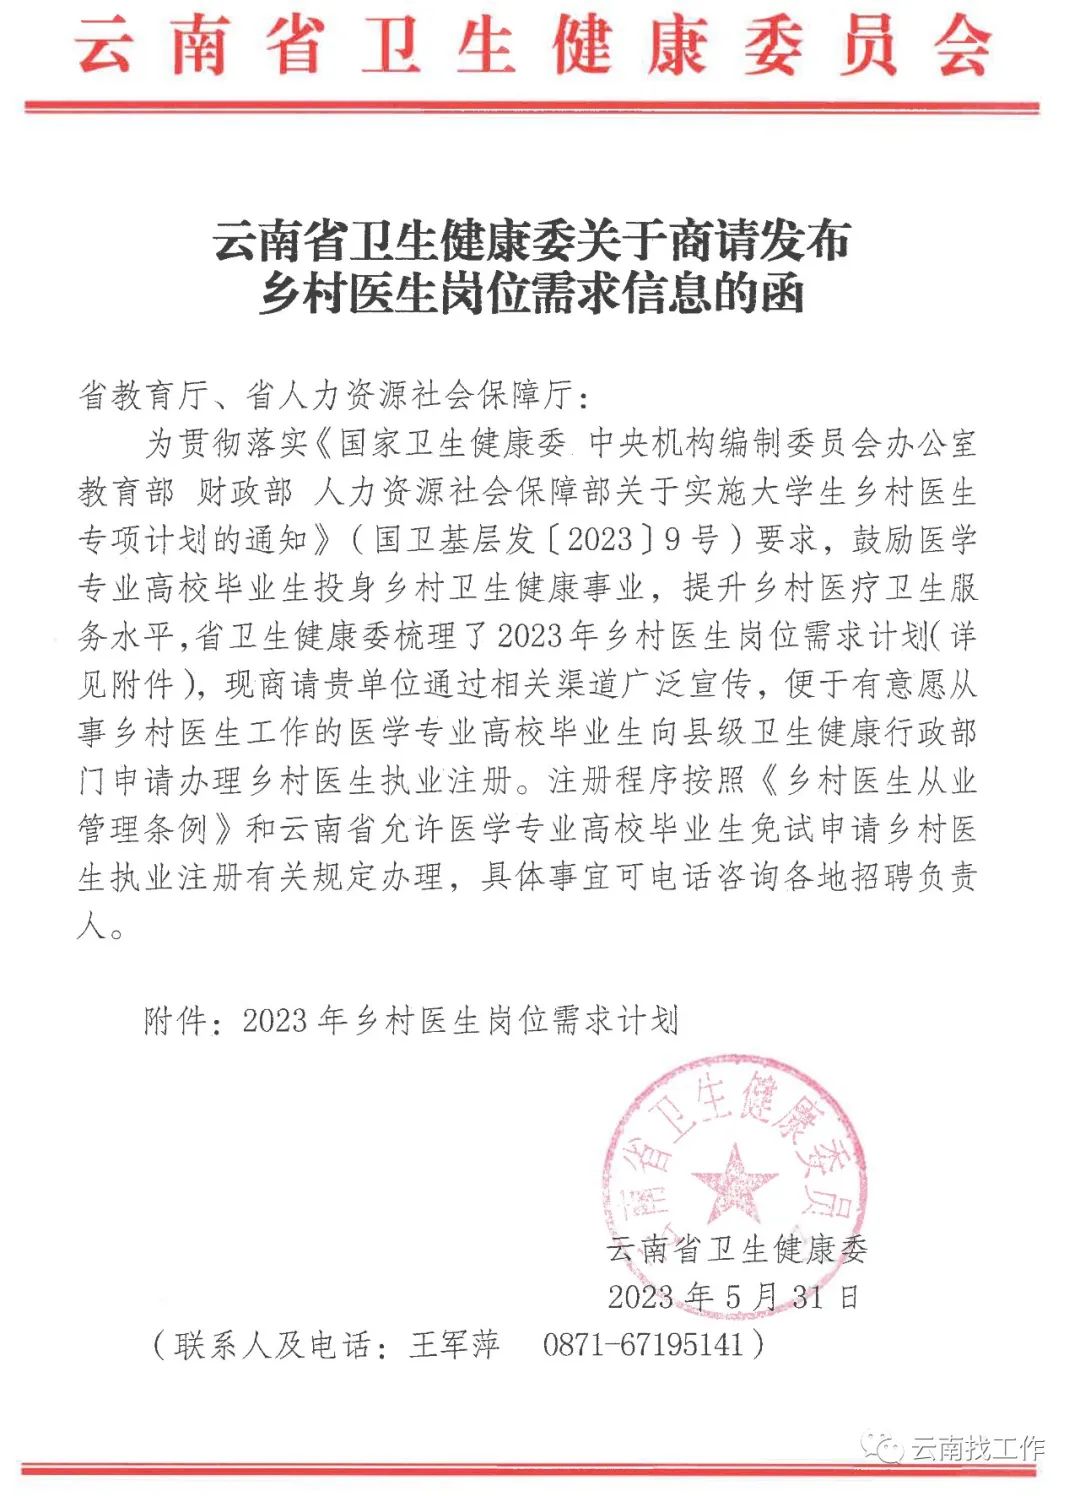 【2408人】云南省2023年招聘乡村医生公告发布